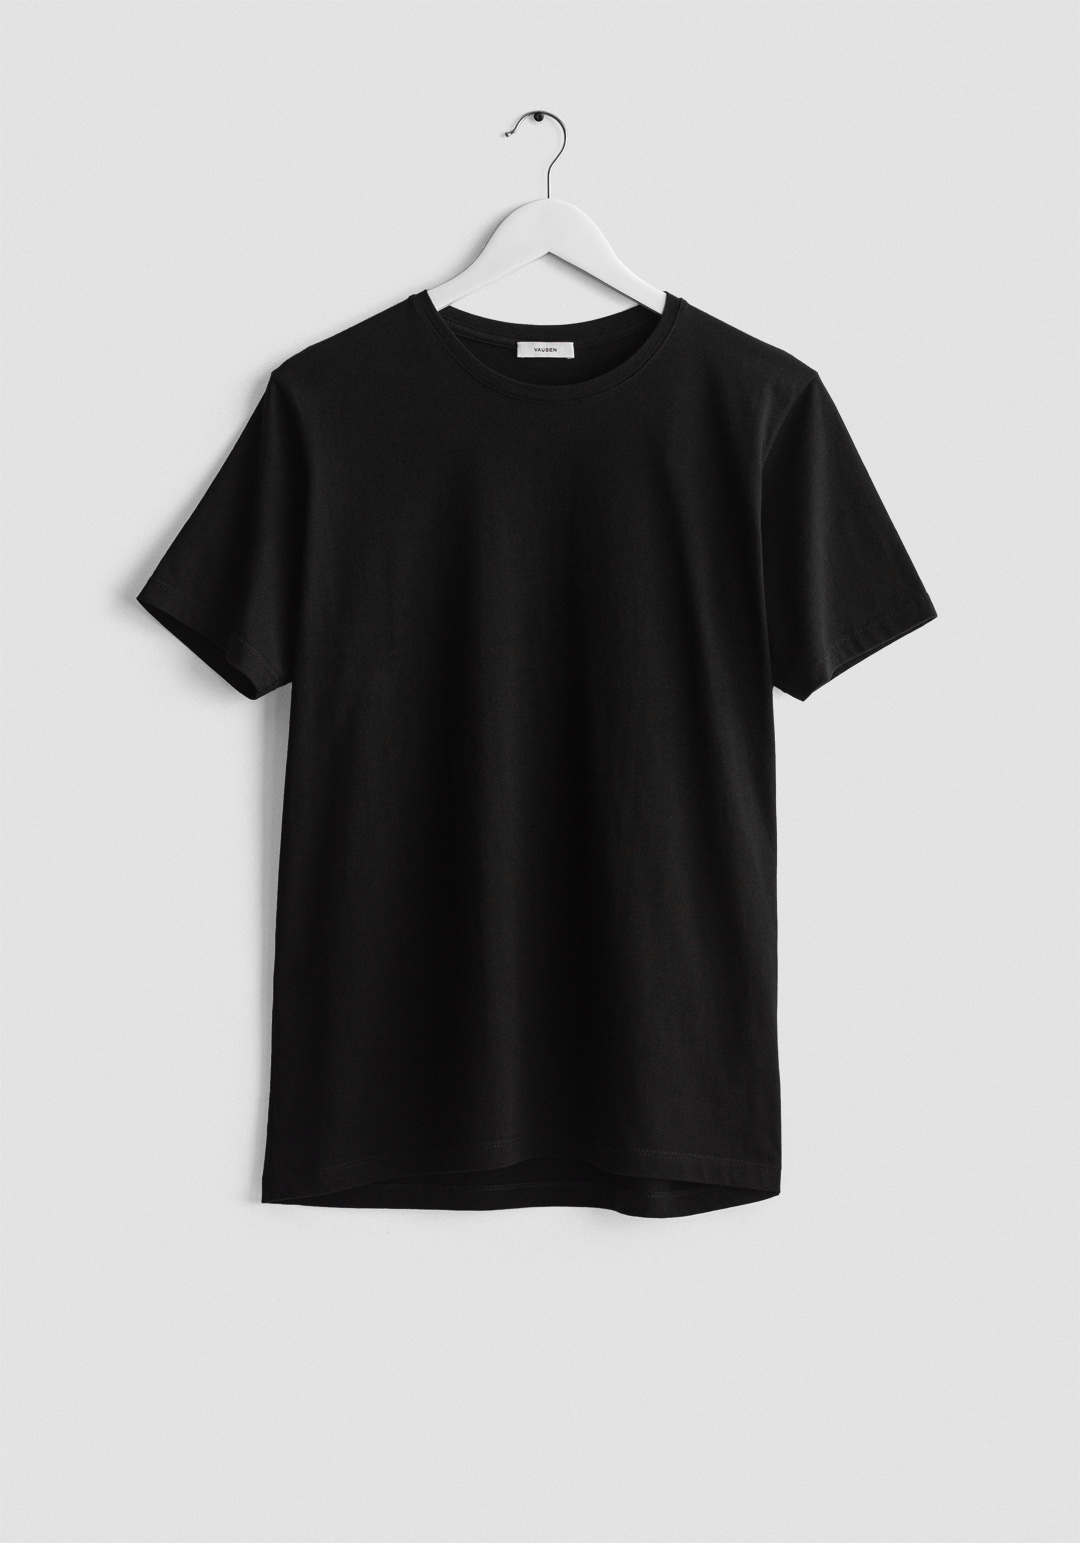 aleatorio pizarra Drástico Camiseta negra manga corta - Vausen